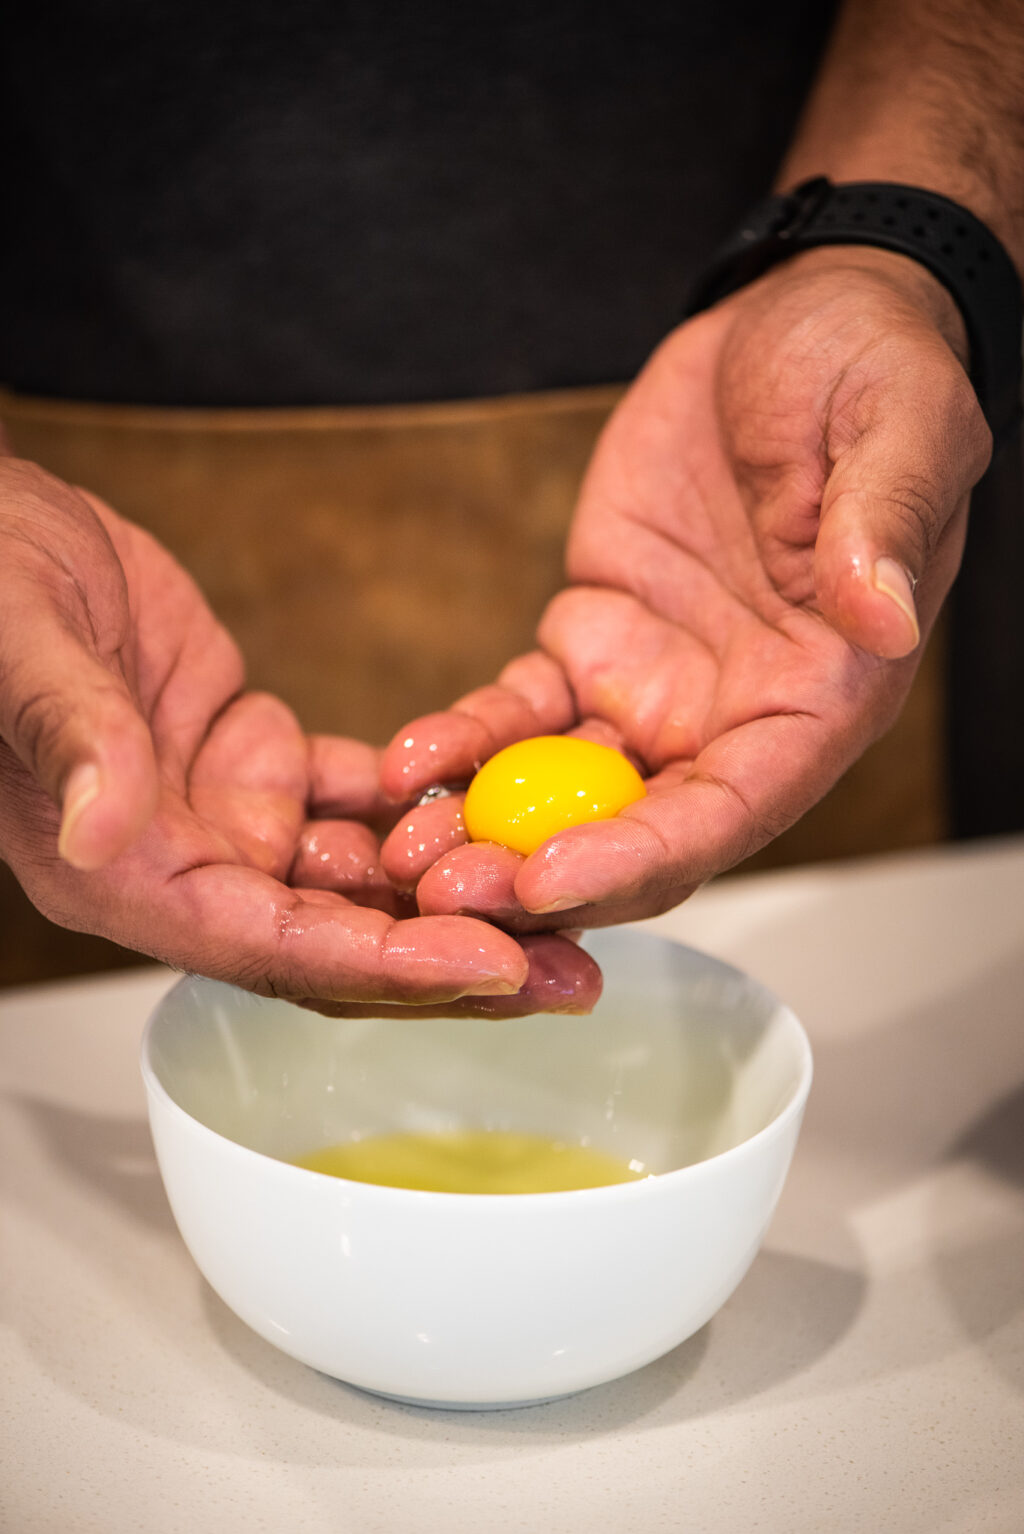 separating egg yolk from egg white to make hollandaise sauce